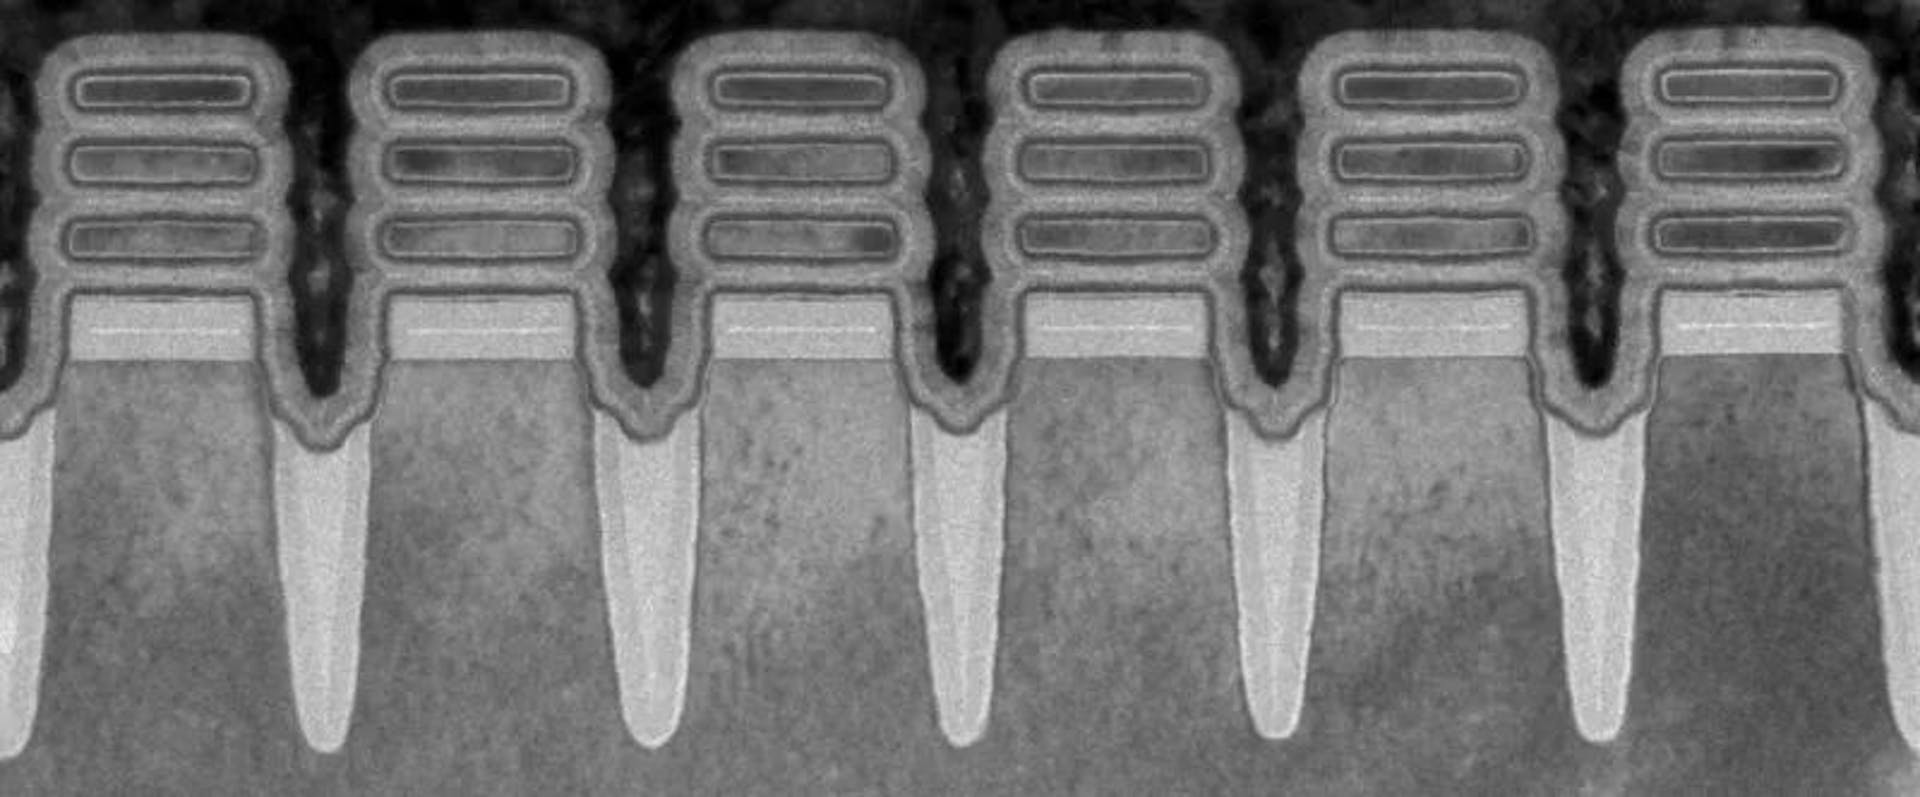 출처 - https://time.com/collection/best-inventions-2022/6228819/ibm-two-nanometer-chip/